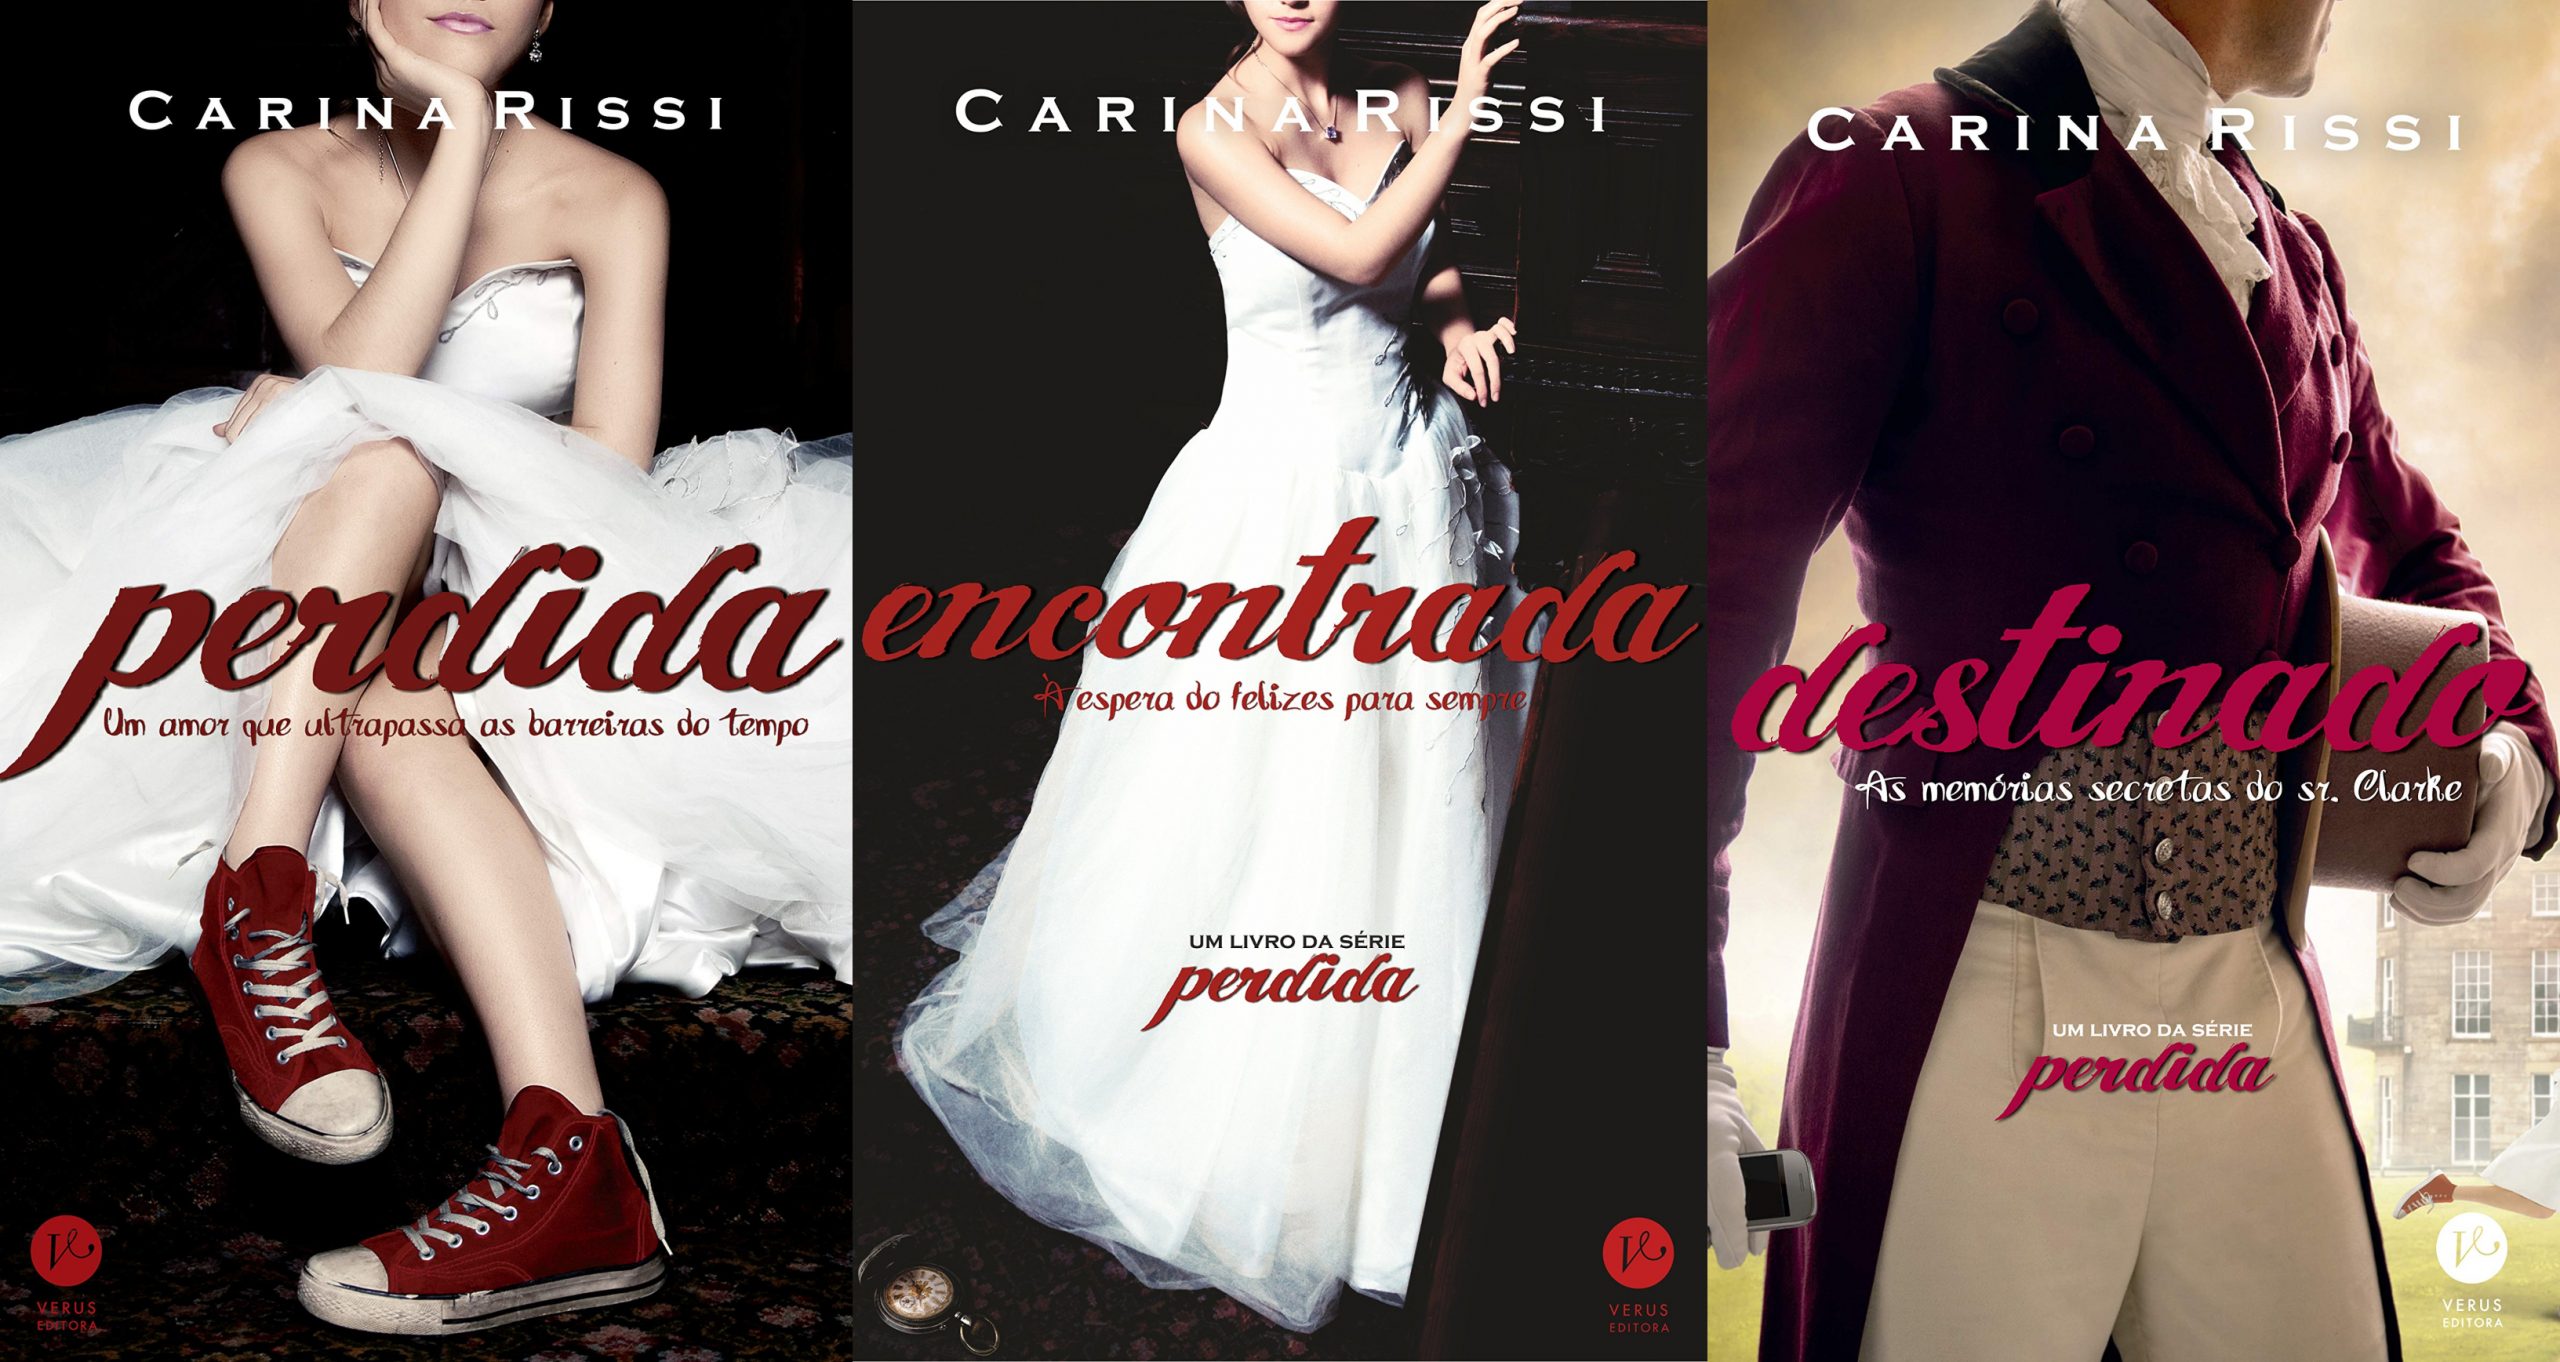 Confira a ordem dos Livros da série Perdida, de Carina Rissi.